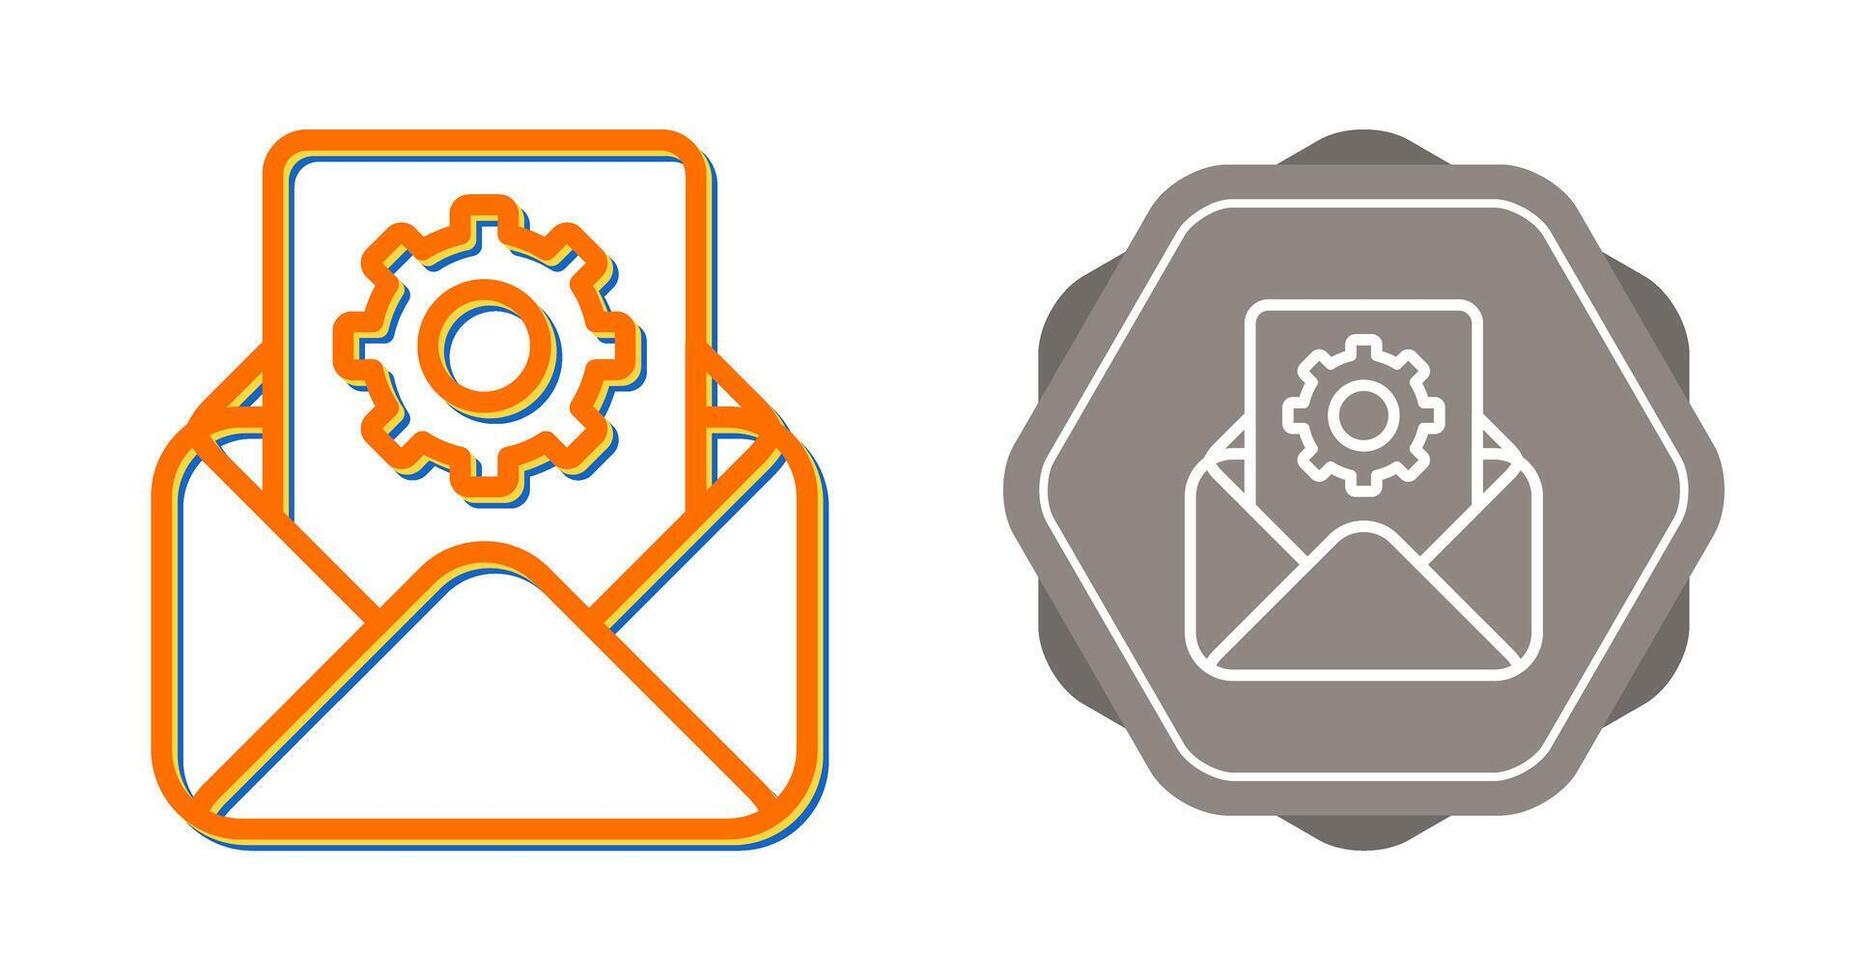 correo electrónico servicios vector icono